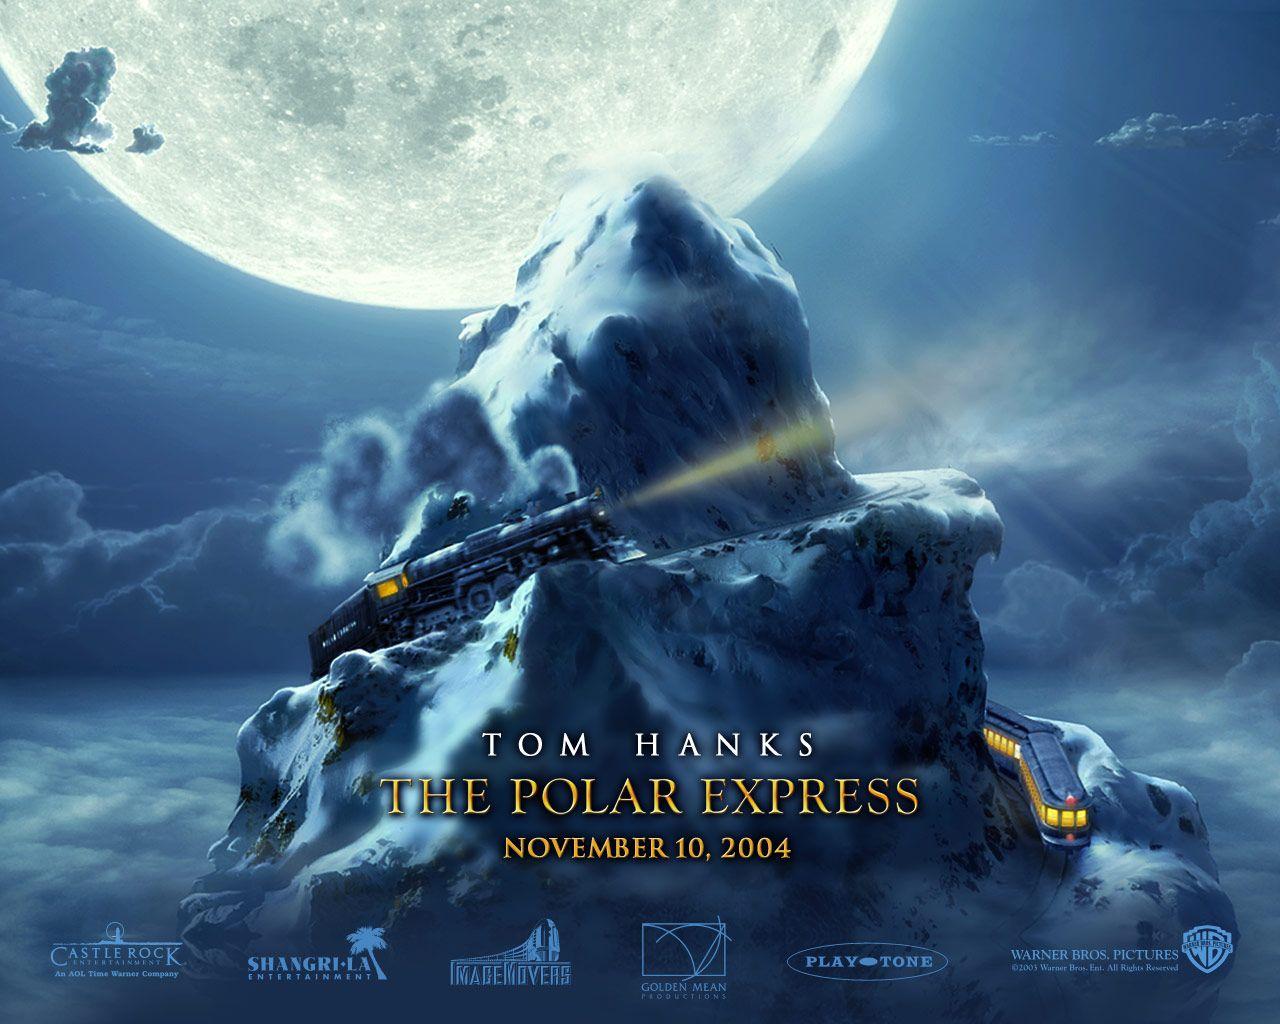 The Polar Express Wallpaper (1280 x 1024 Pixels)